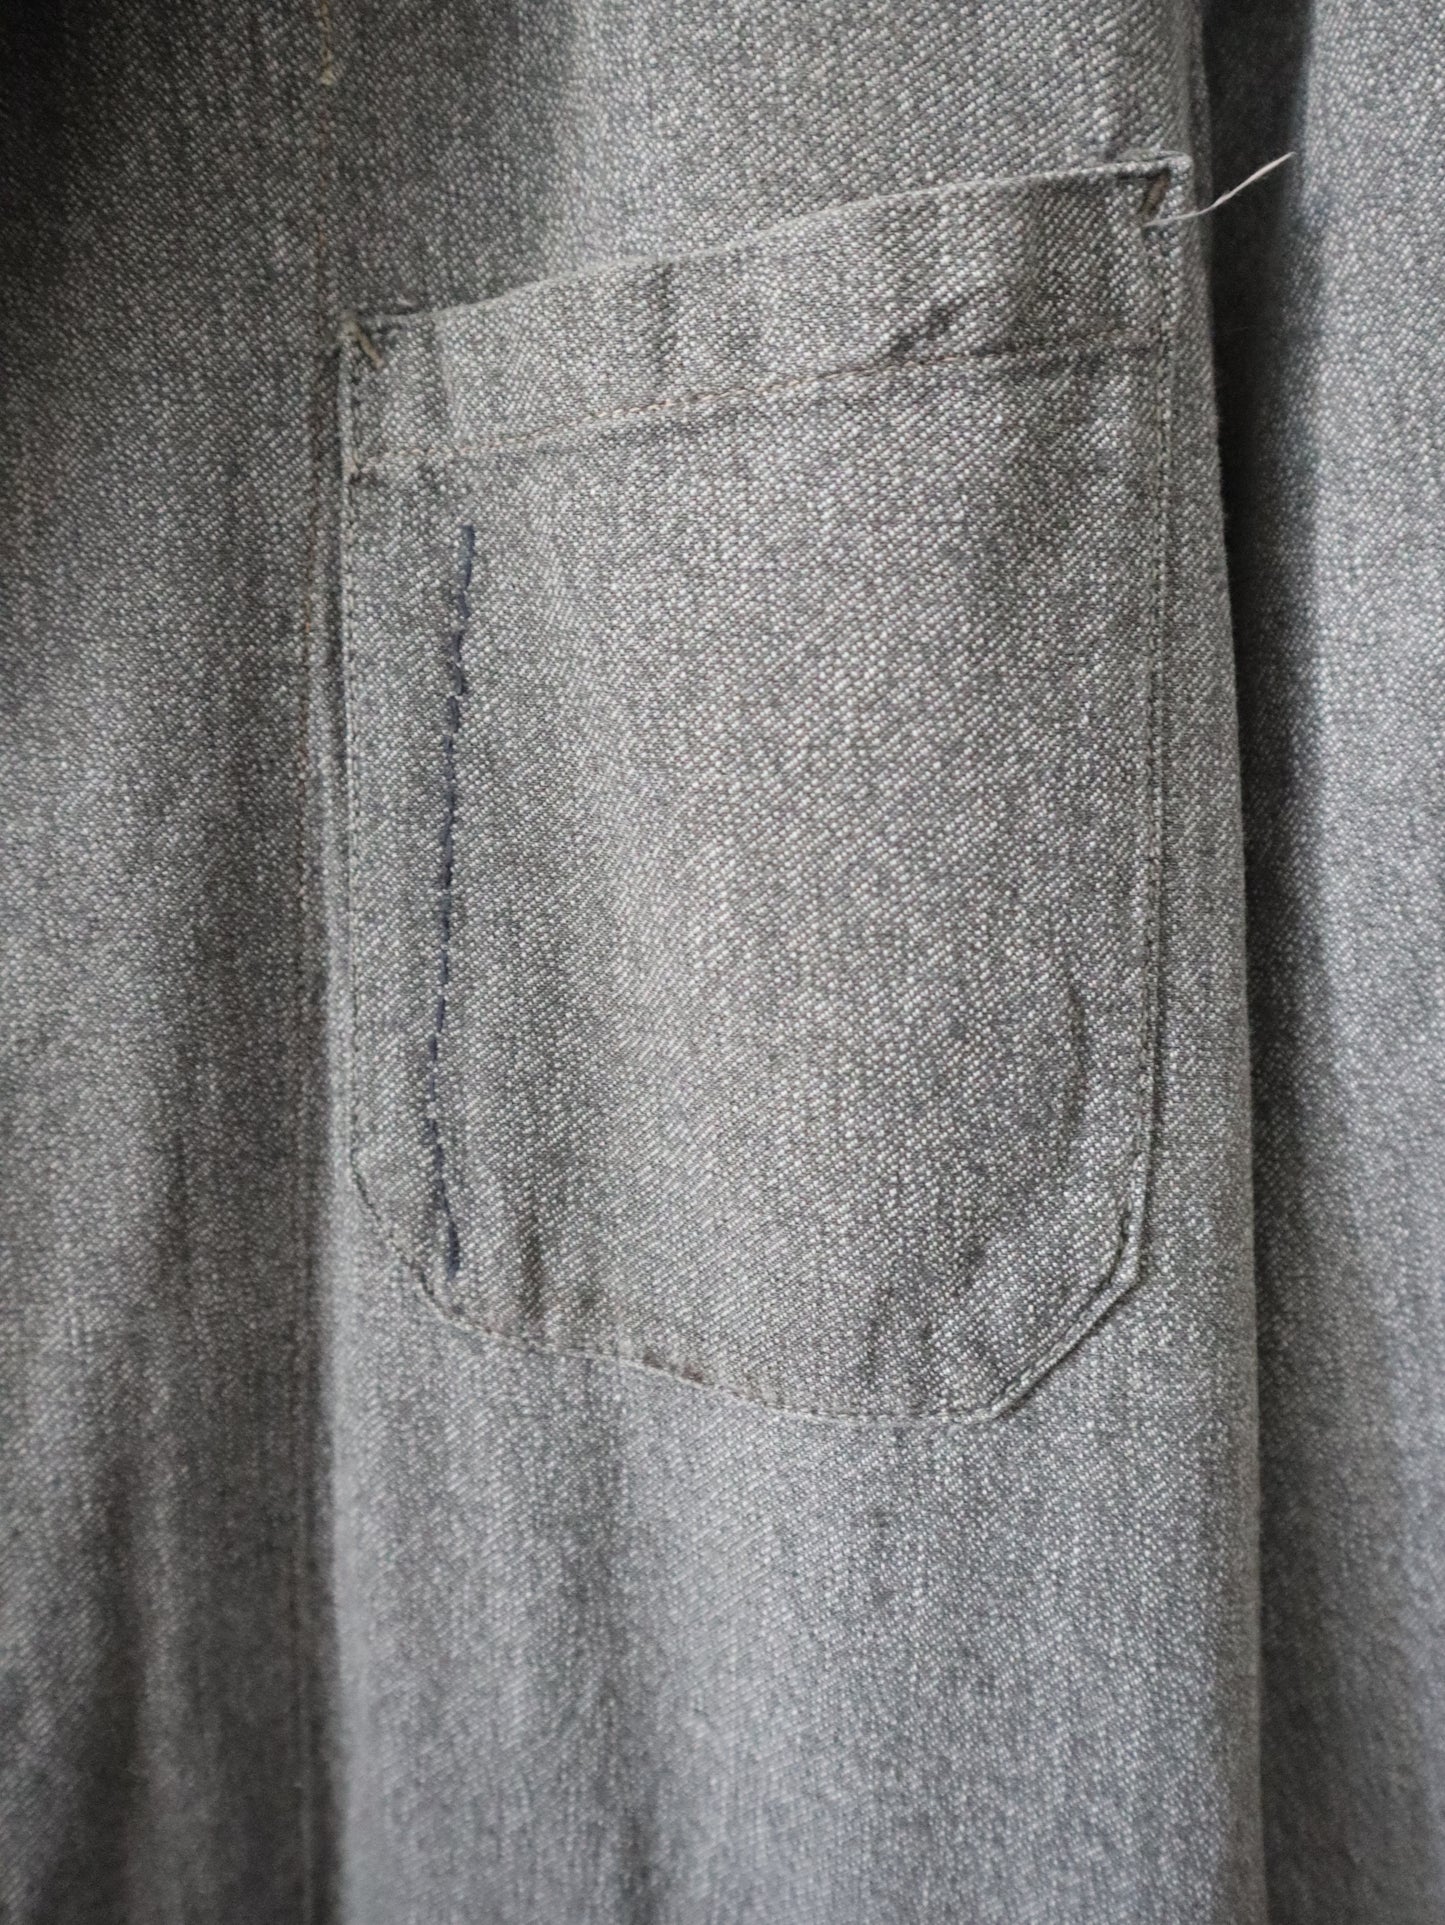 1950s French Grey Workwear Duster Jacket Coat Cotton Chore AU MOLINEL